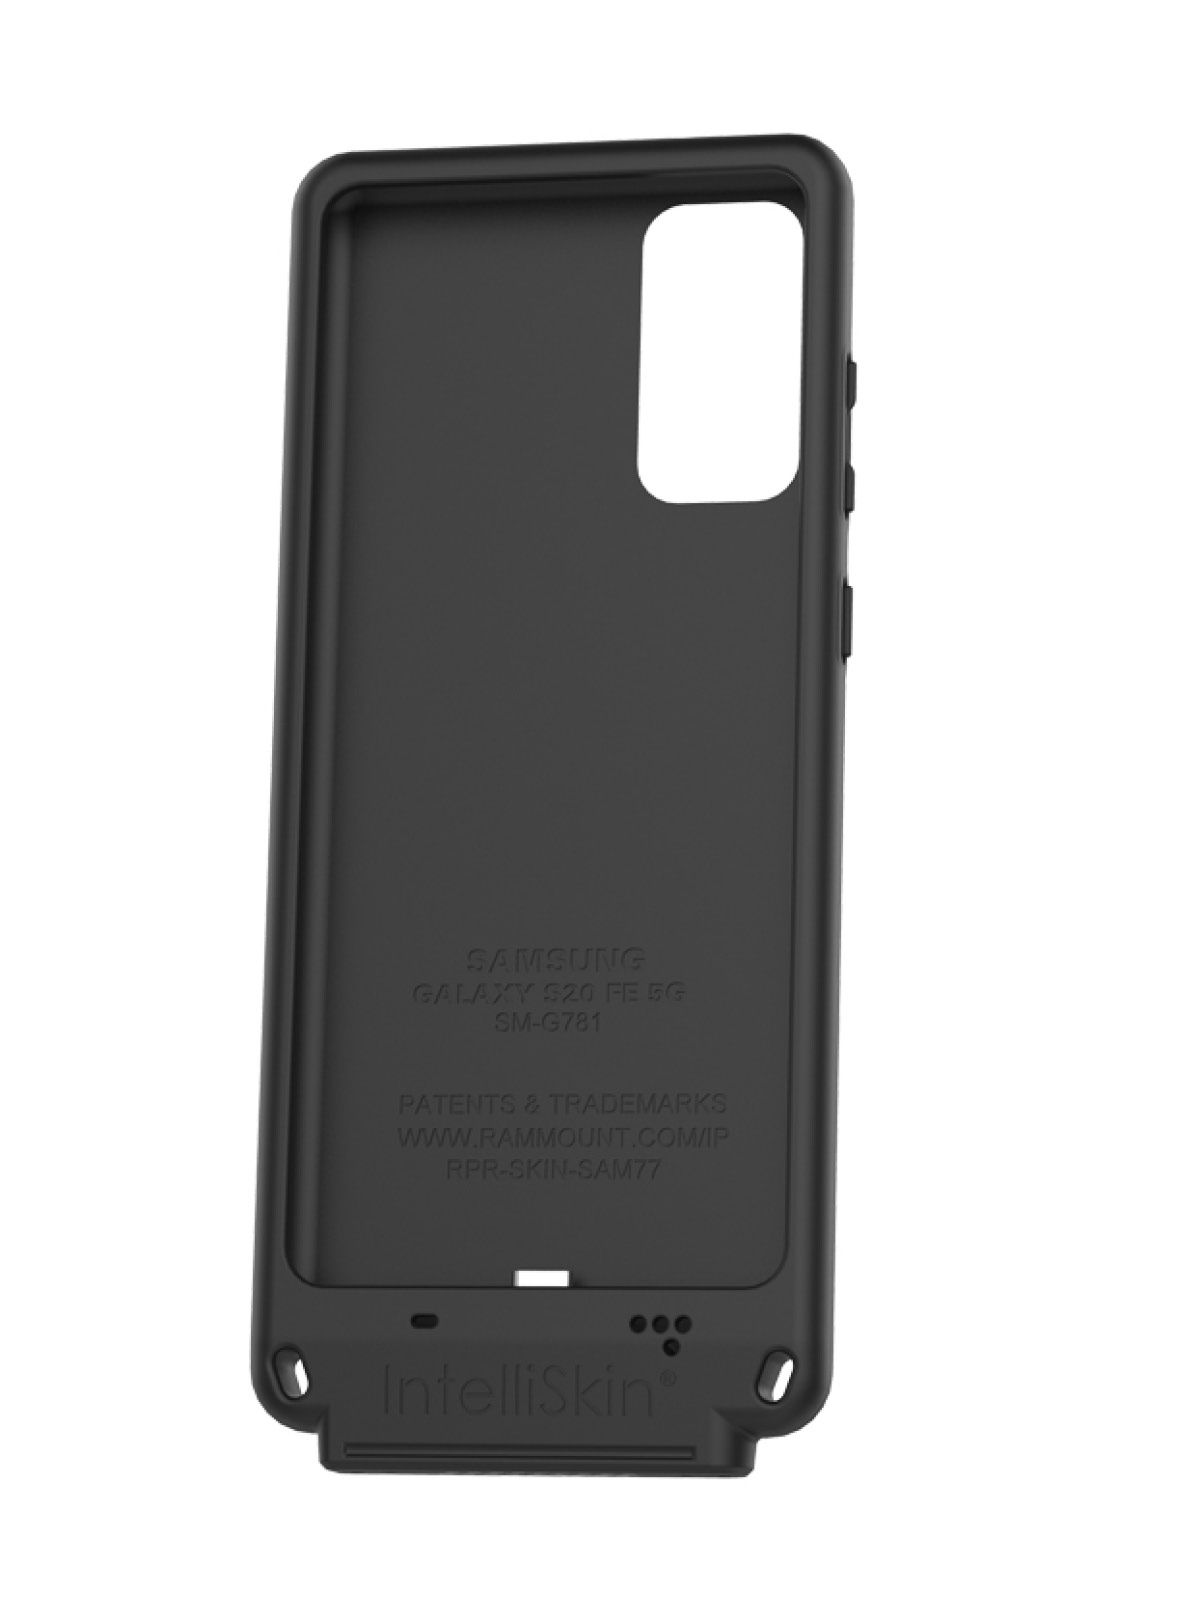 RAM Mounts IntelliSkin Lade-/Schutzhülle mit GDS-Technologie für Samsung Galaxy S20 FE 5G (SM-G781)